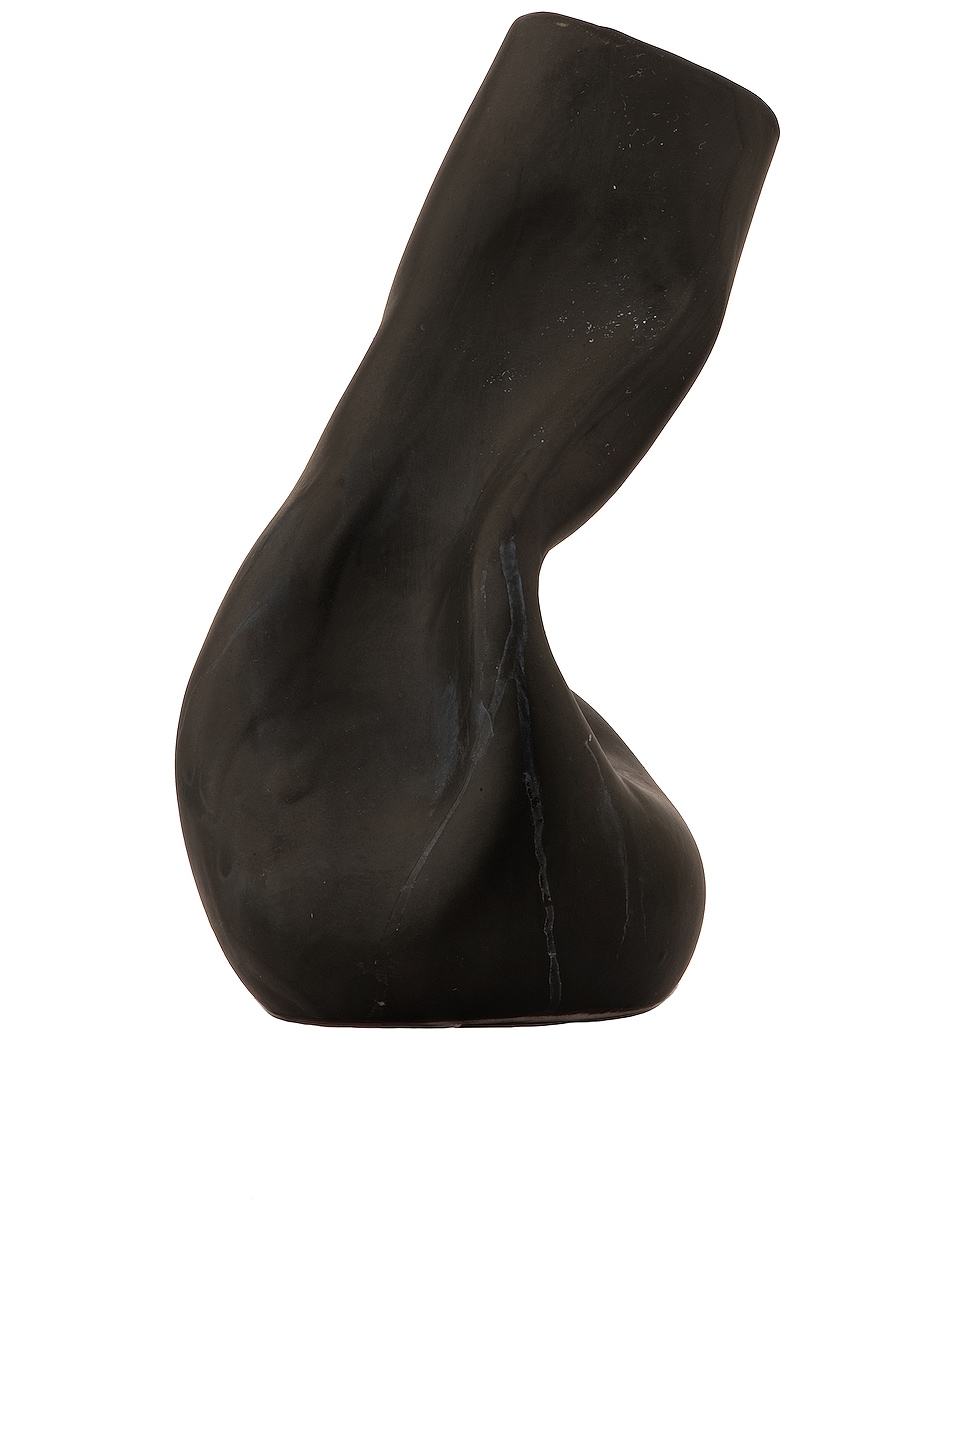 Image 1 of Completedworks Solitude Vase in Black